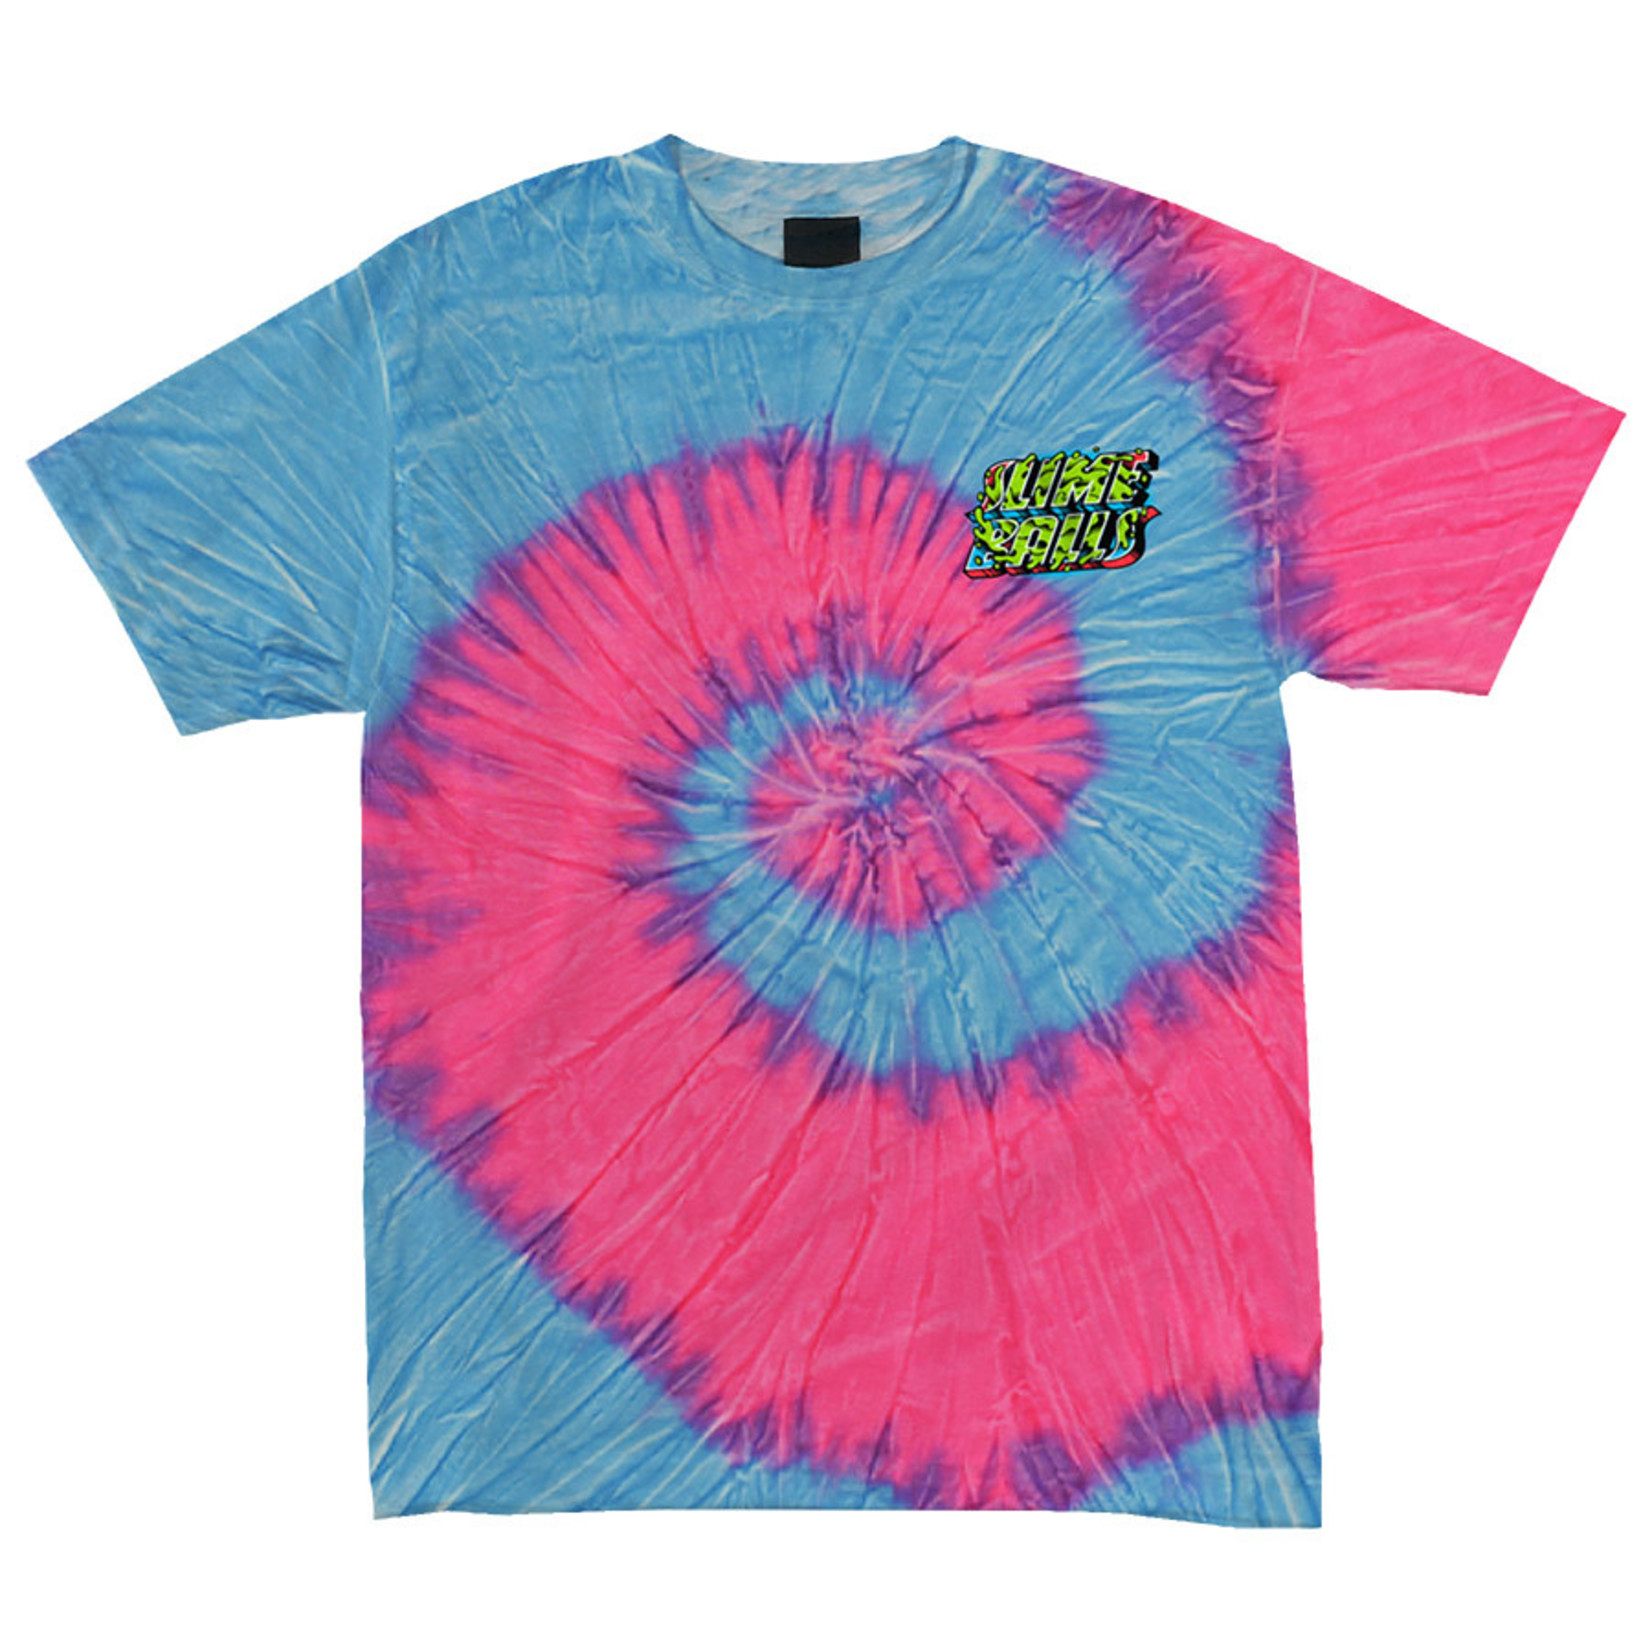 Slime Balls Slime Balls Greetings From SB Men's T-Shirt - Pink/Blue -